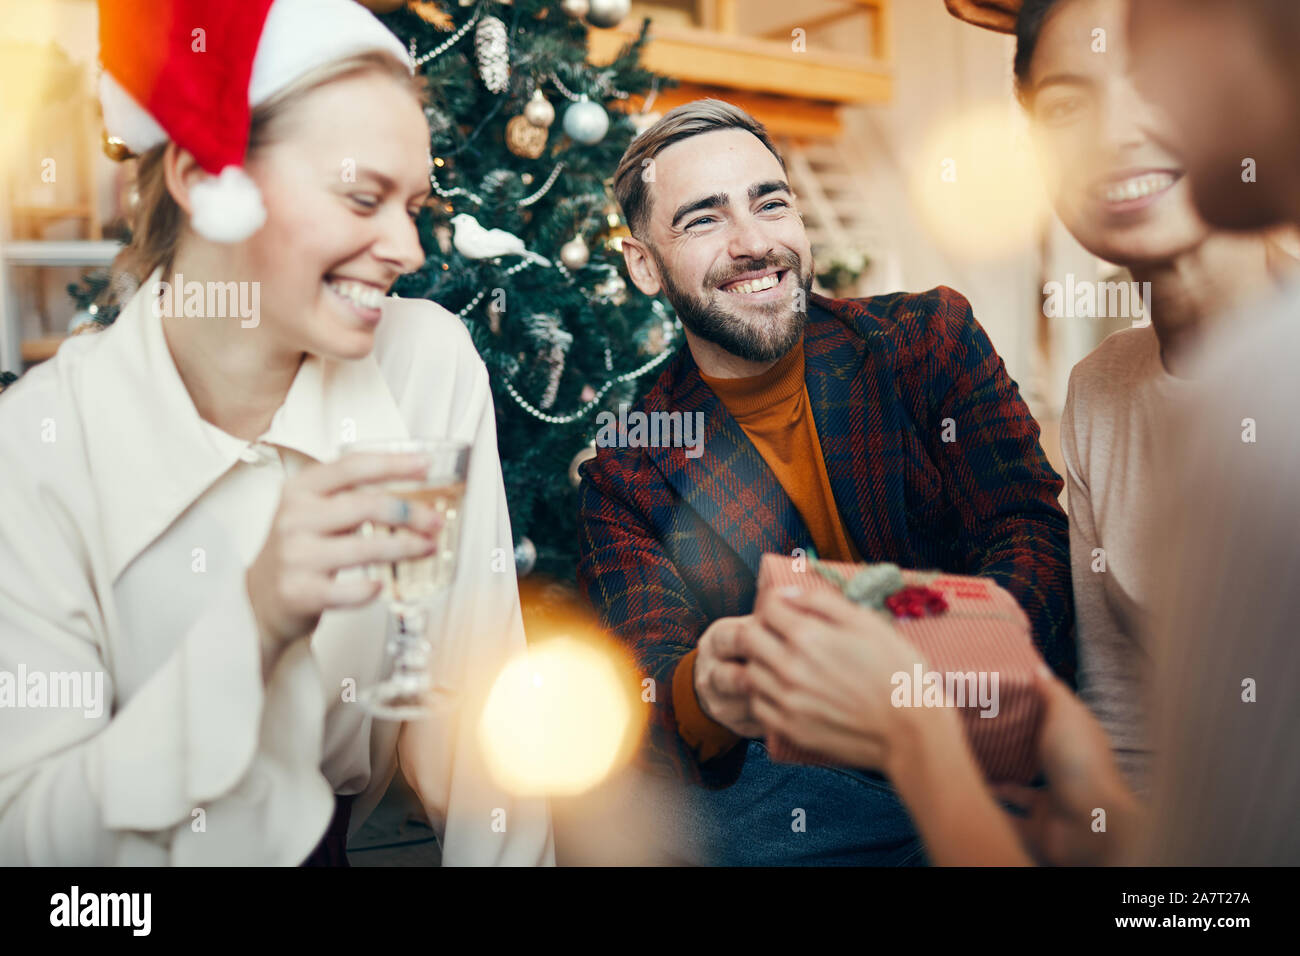 Retrato de un hombre adulto elegante sonriendo felizmente mientras intercambian regalos con los amigos durante la fiesta de Navidad Foto de stock